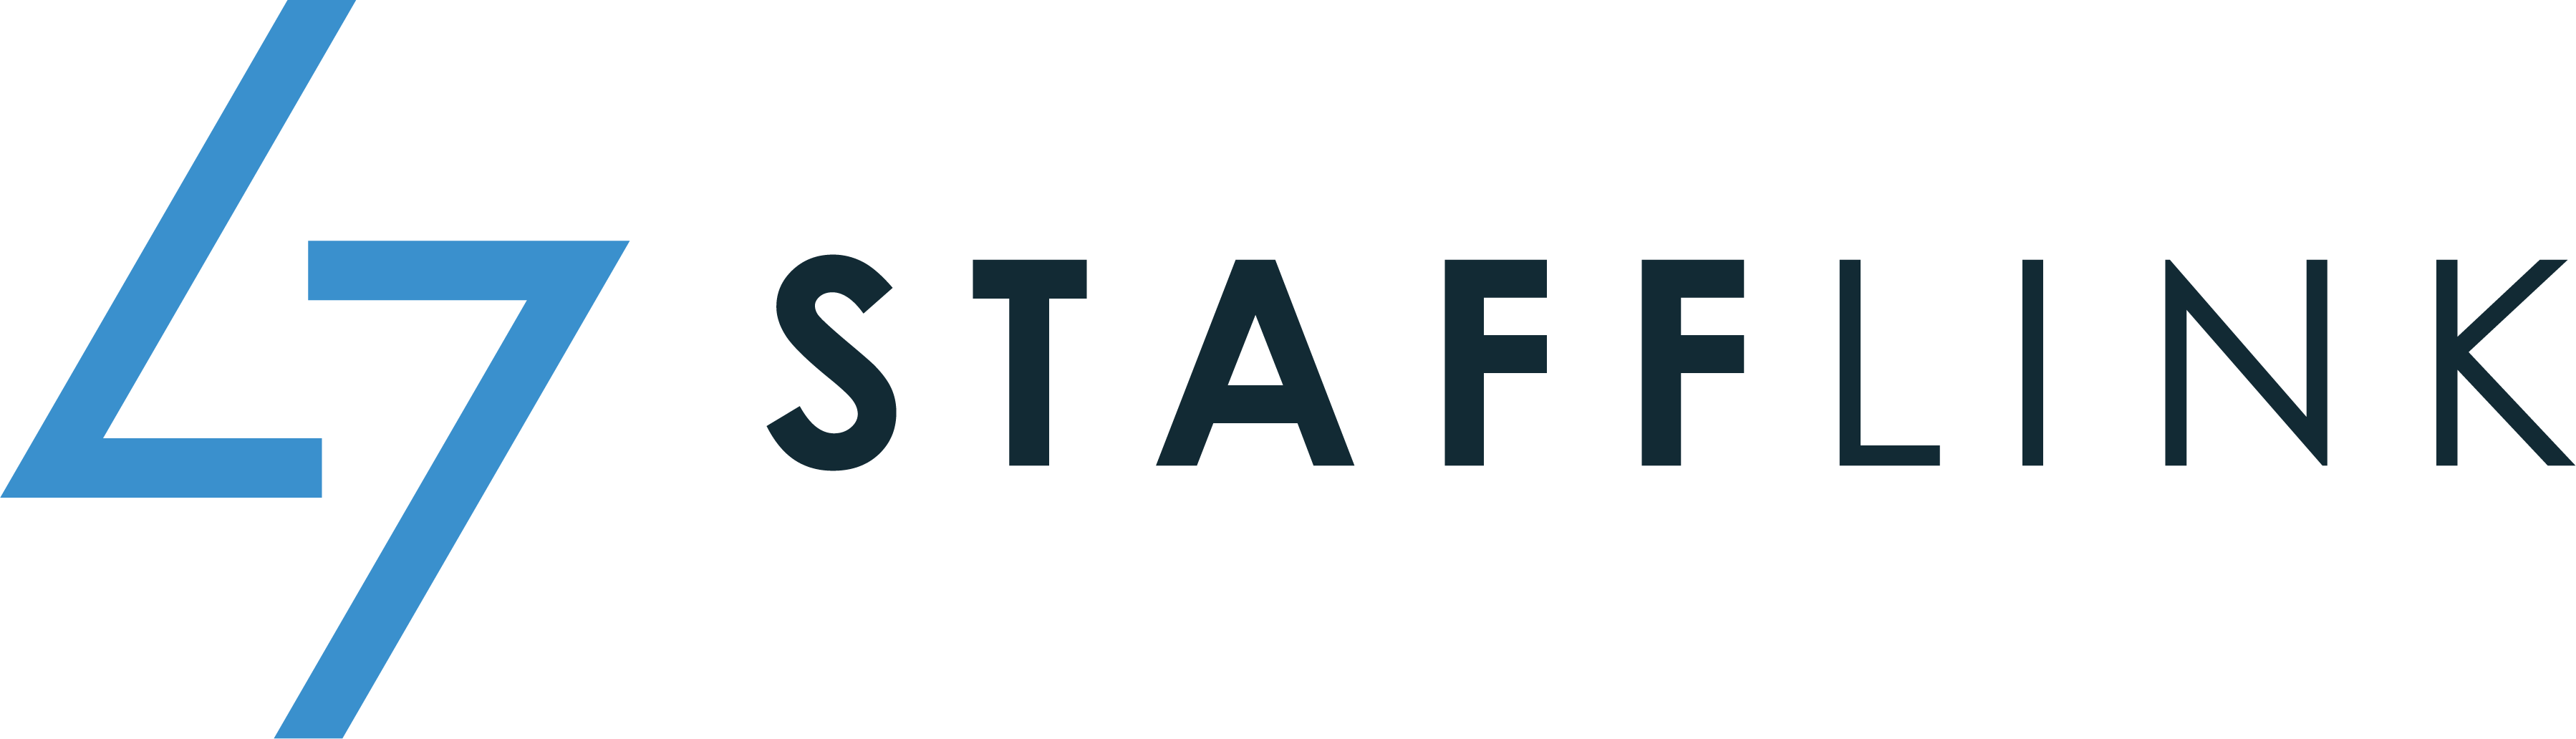 Stafflink logo